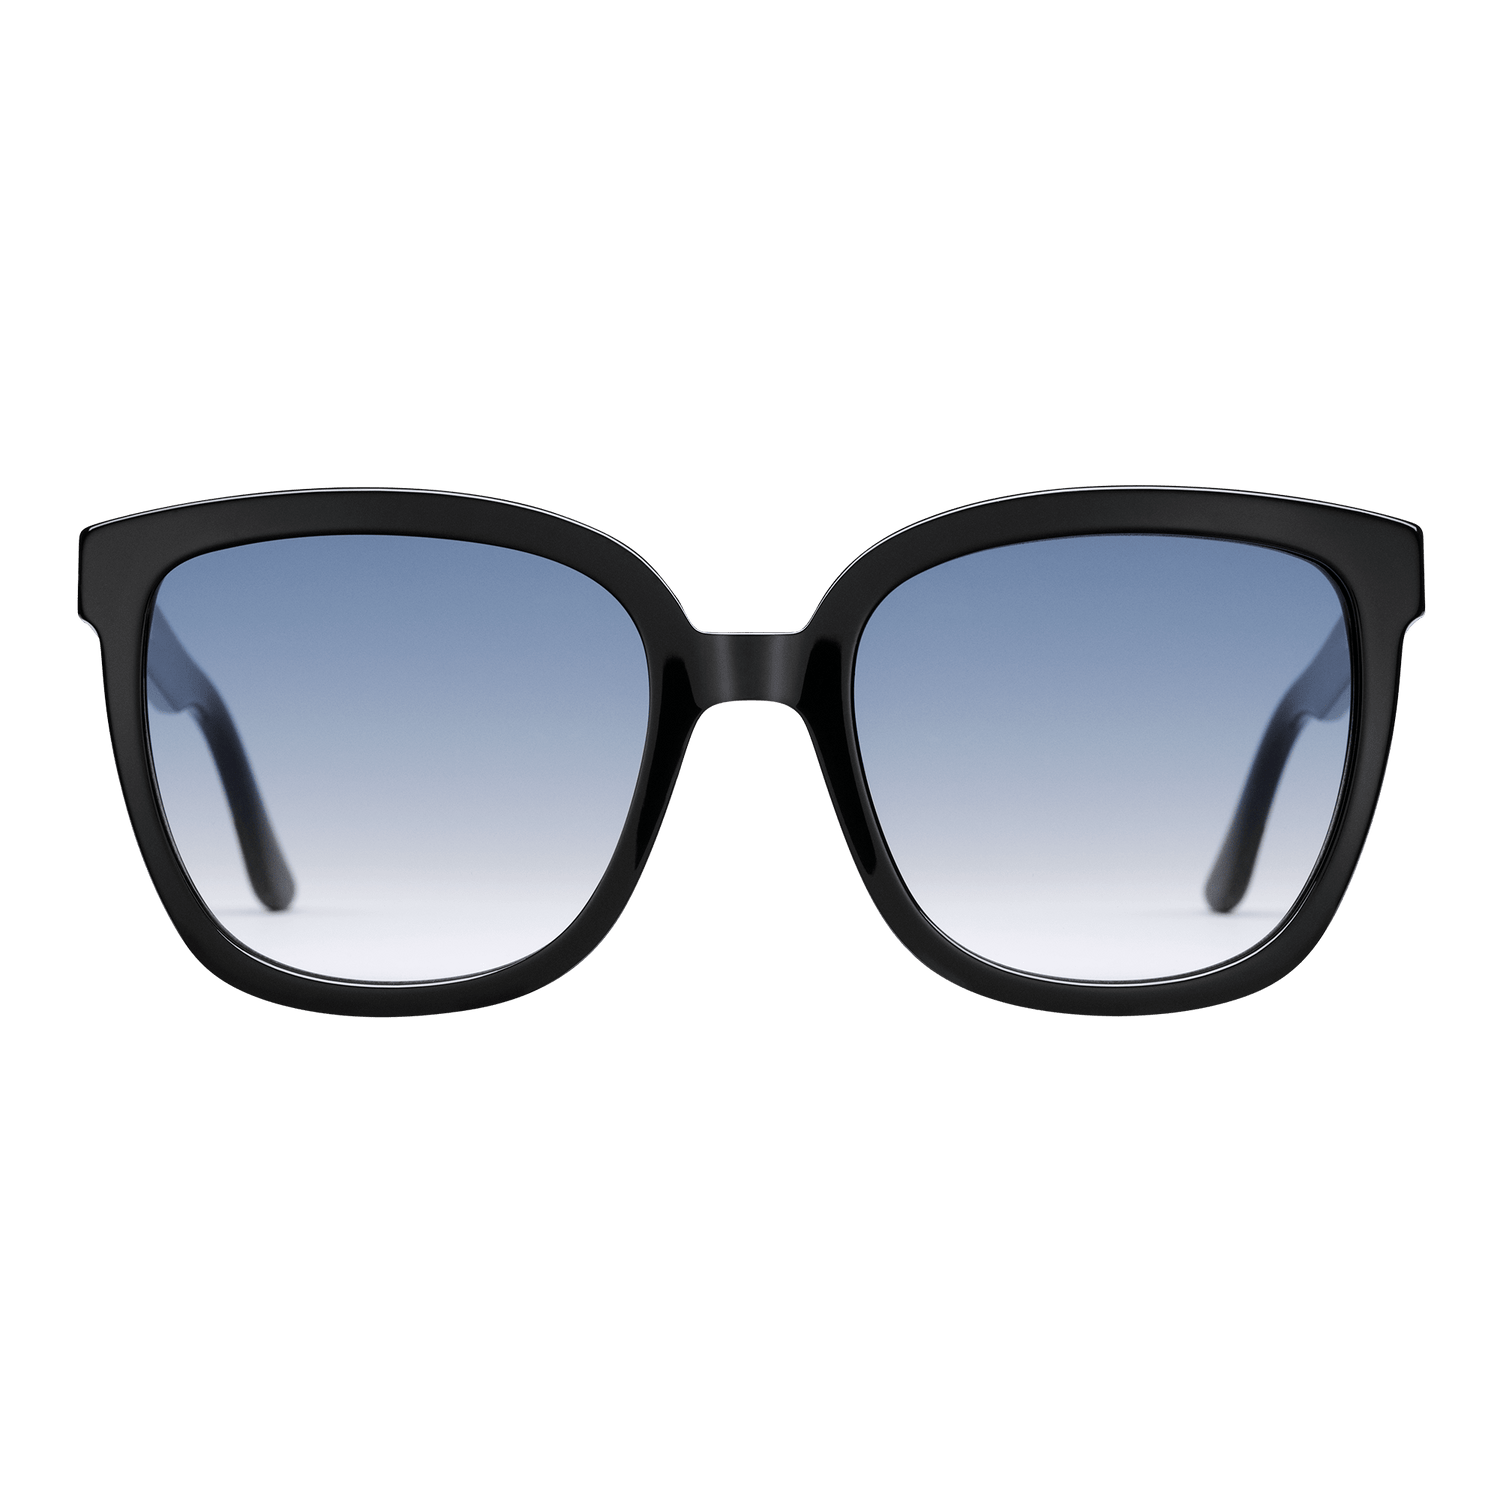 Lynx Acetate - Designer sunglasses for women | DW